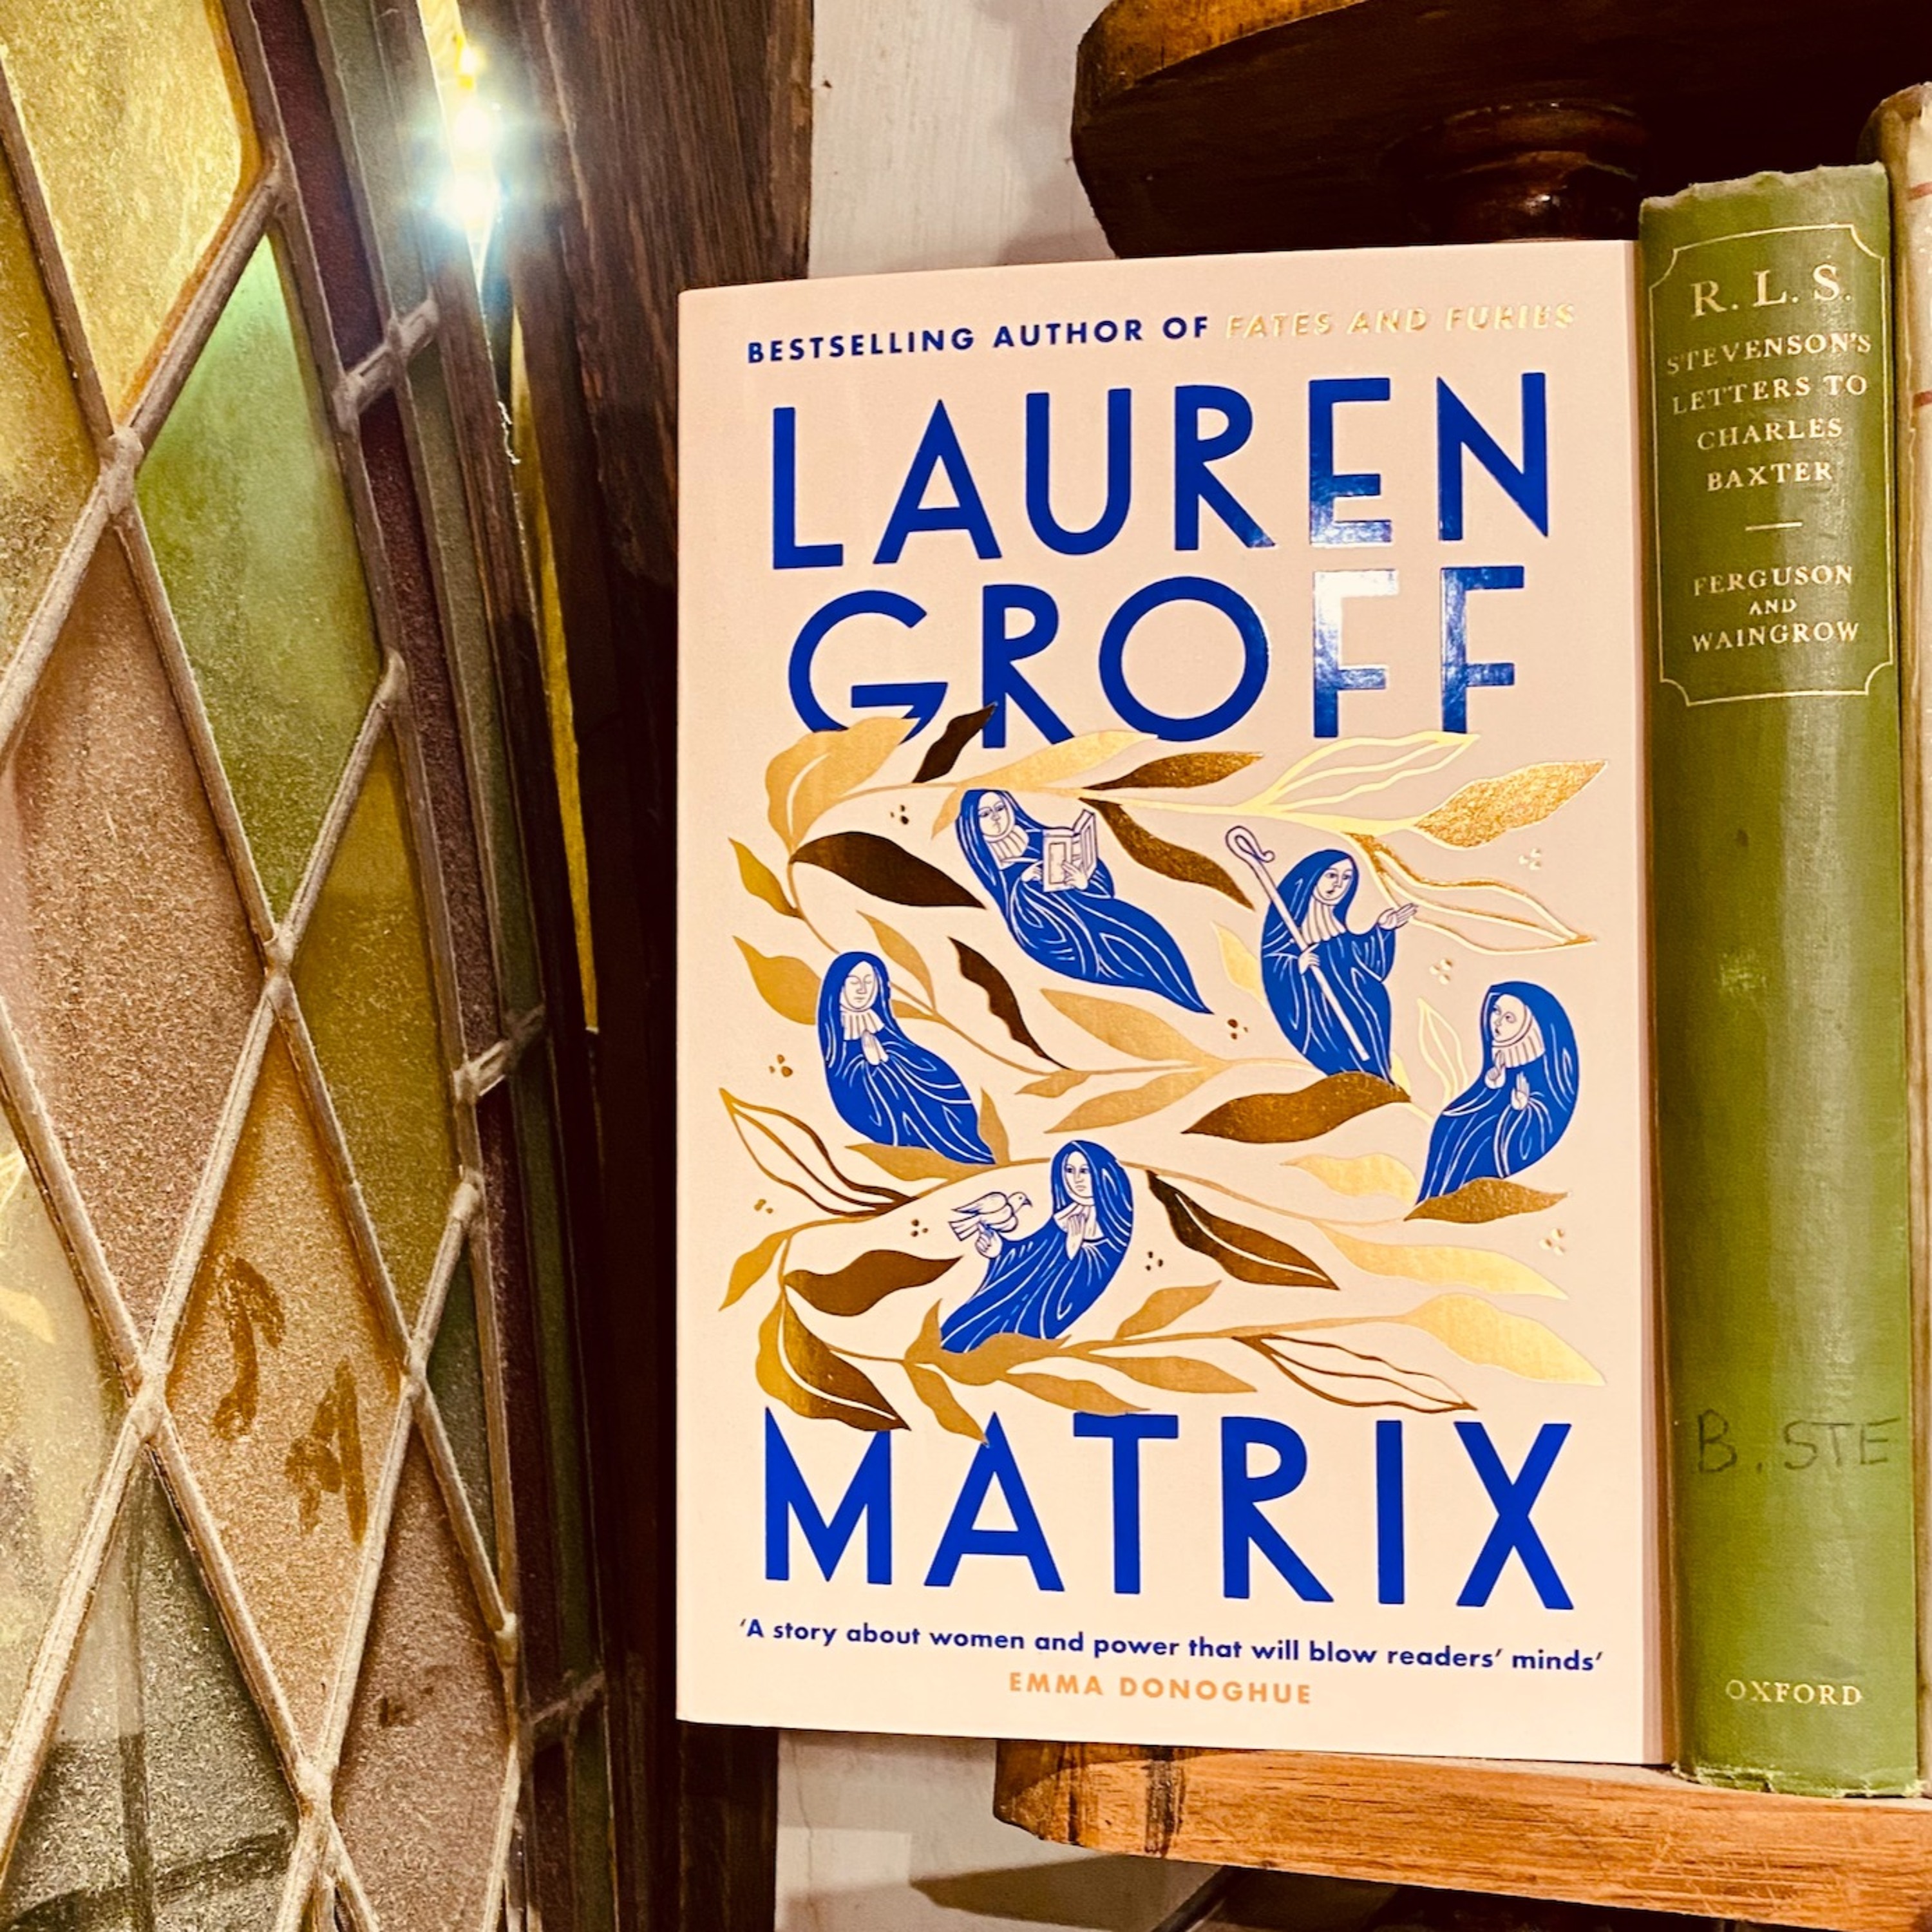 Lauren Groff on Matrix